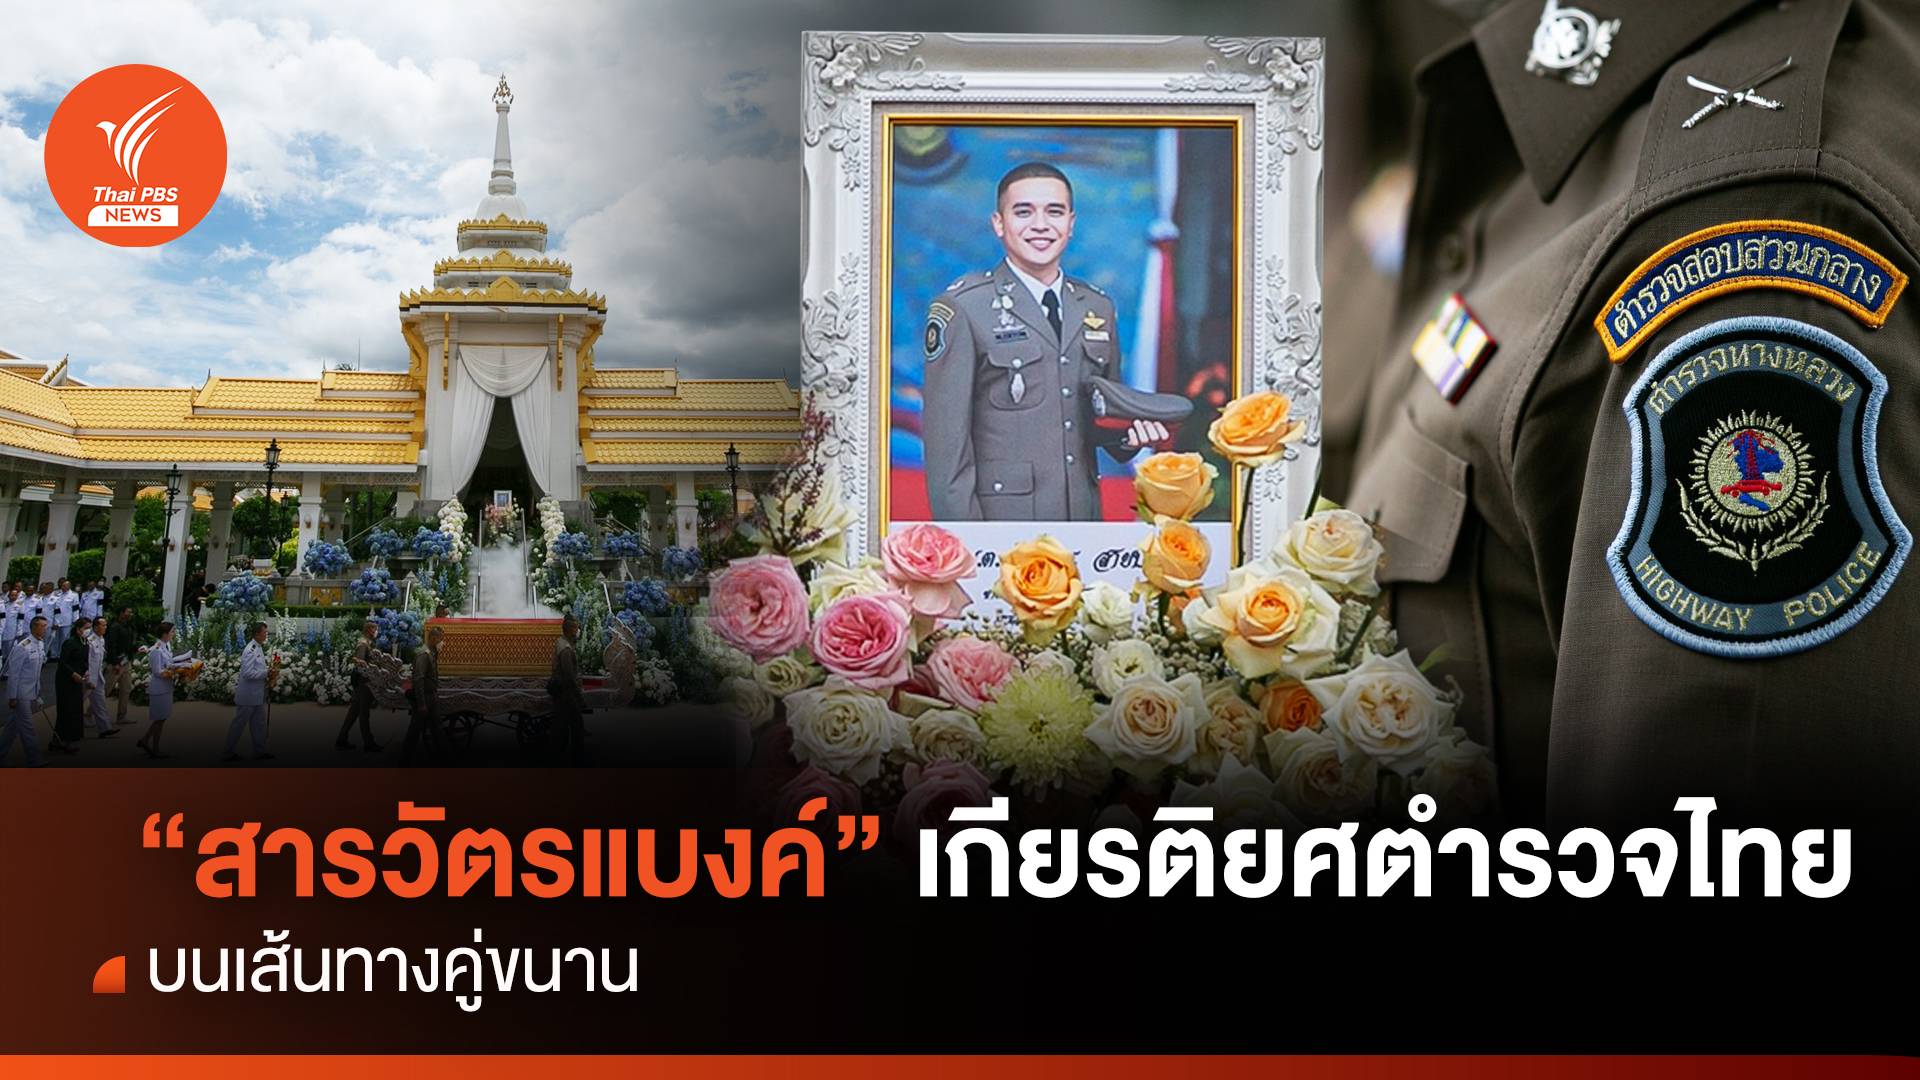 “สารวัตรแบงค์” เกียรติยศตำรวจไทย บนเส้นทางคู่ขนาน